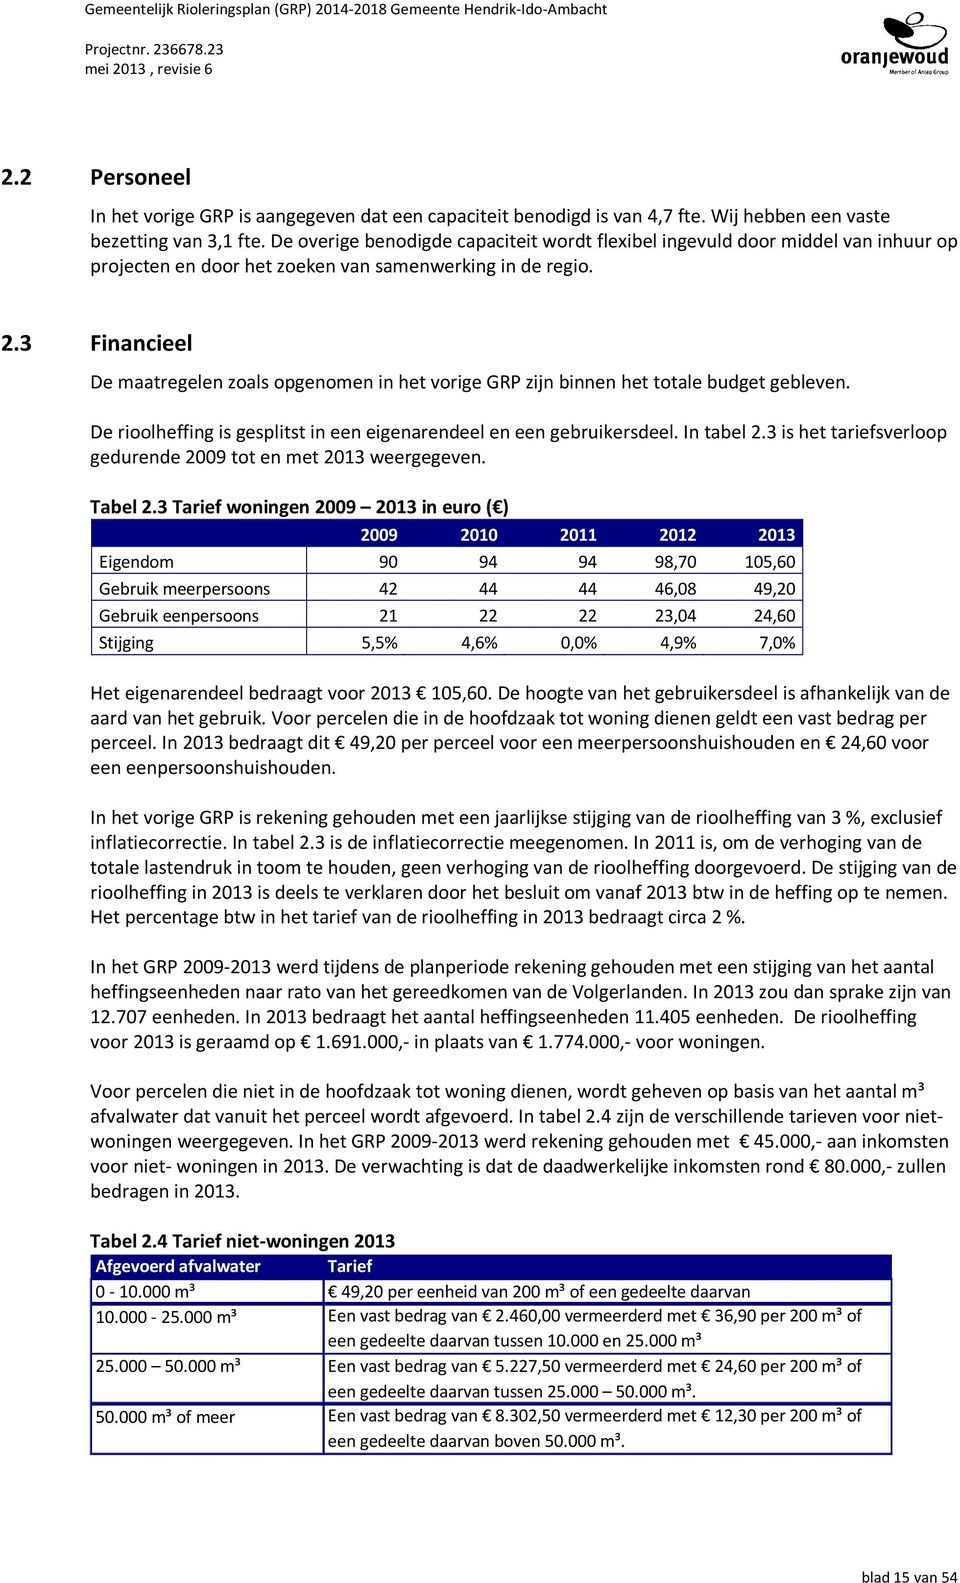 3 Financieel De maatregelen zoals opgenomen in het vorige GRP zijn binnen het totale budget gebleven. De rioolheffing is gesplitst in een eigenarendeel en een gebruikersdeel. In tabel 2.